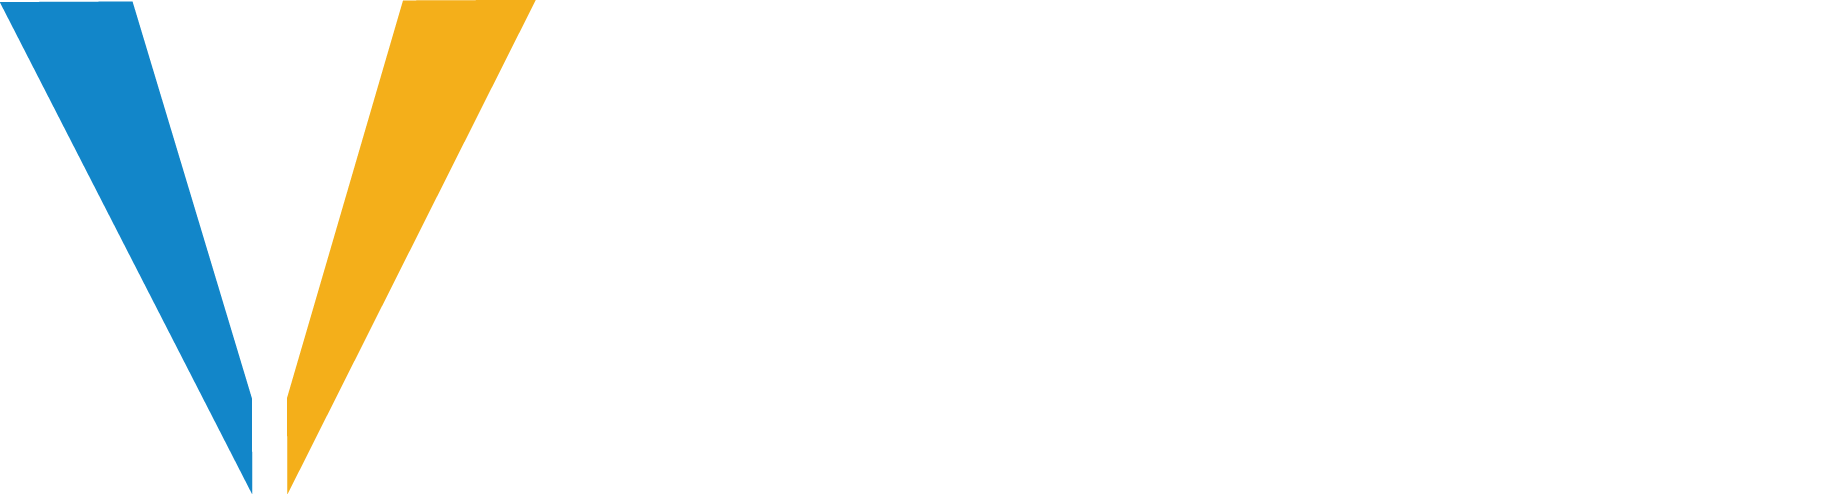 Vasquez Benisek & Lindgren LLP logo